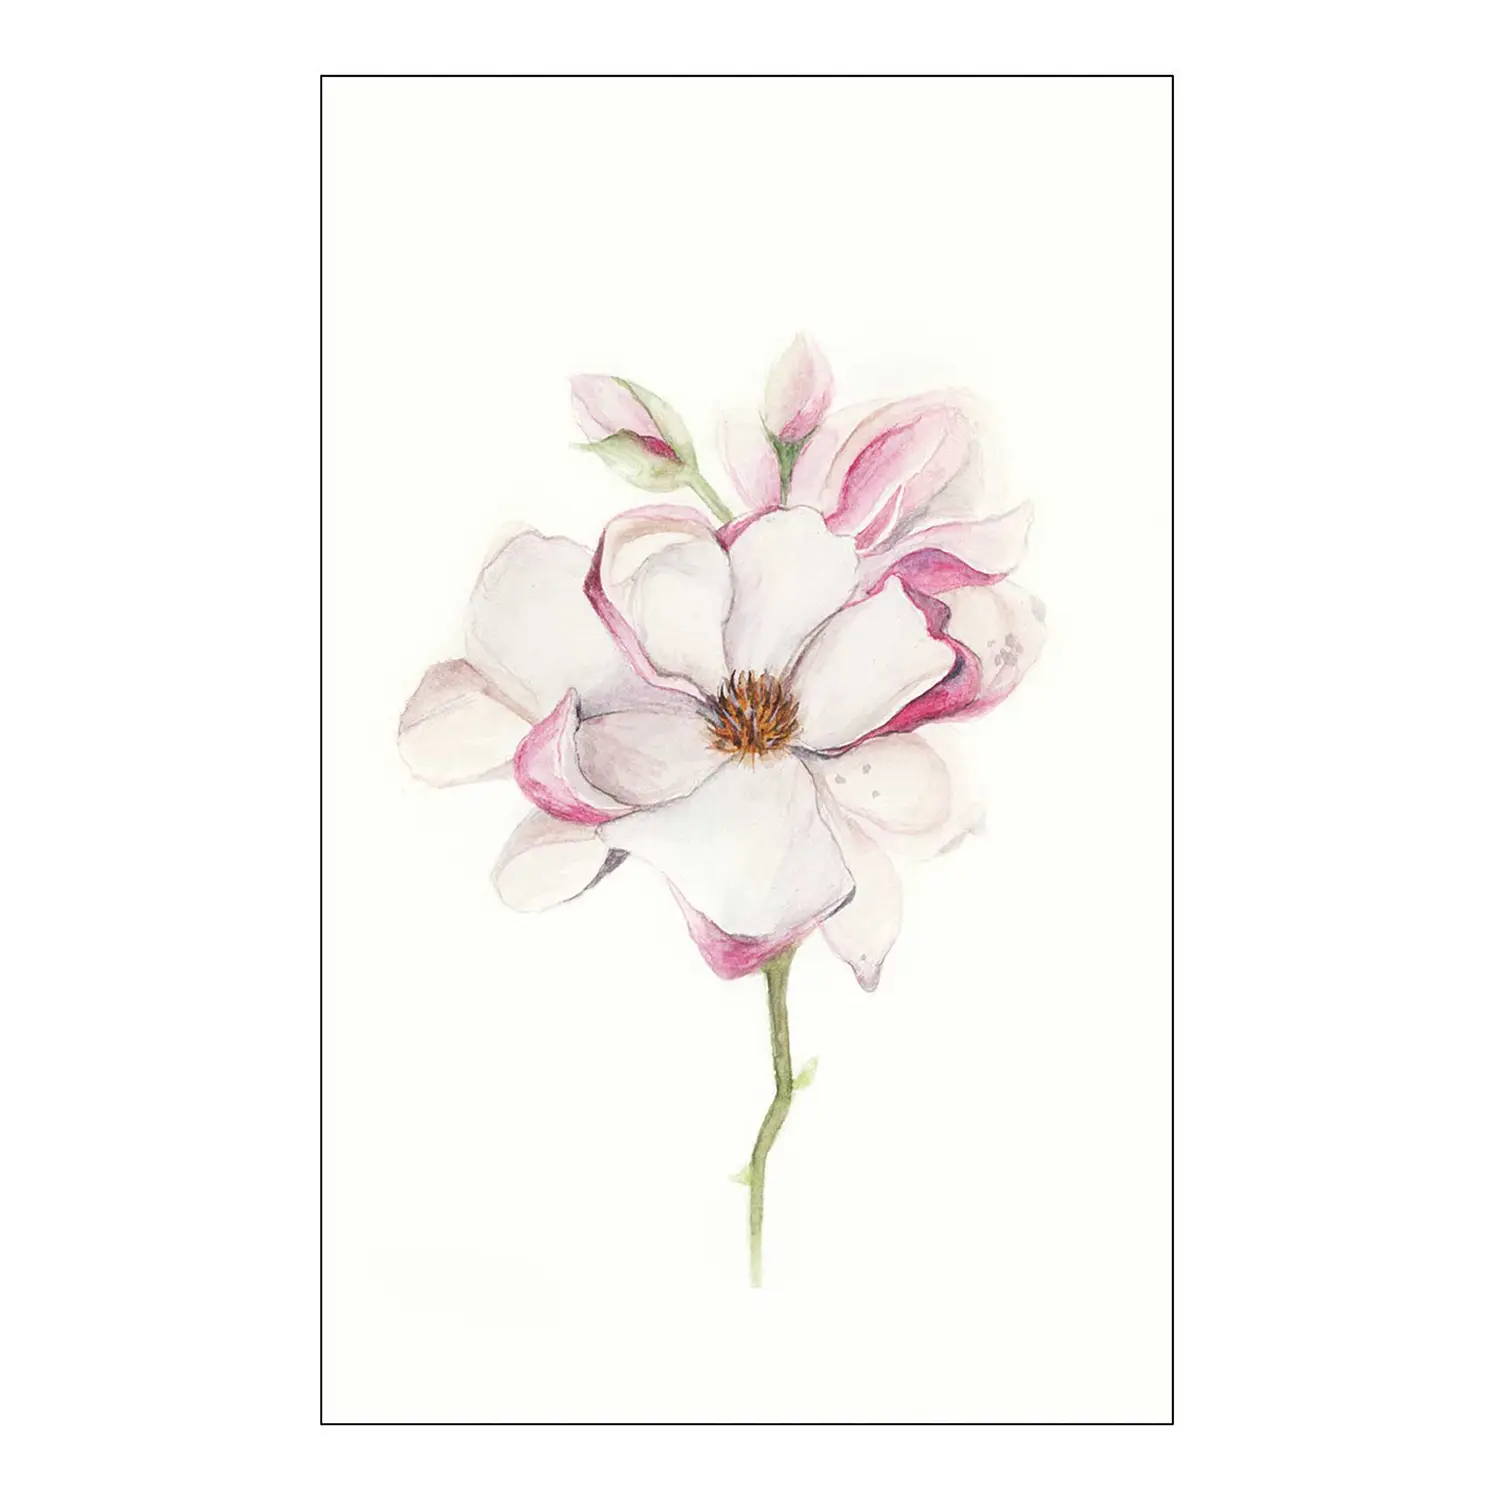 Wandbild Magnolia Blossom